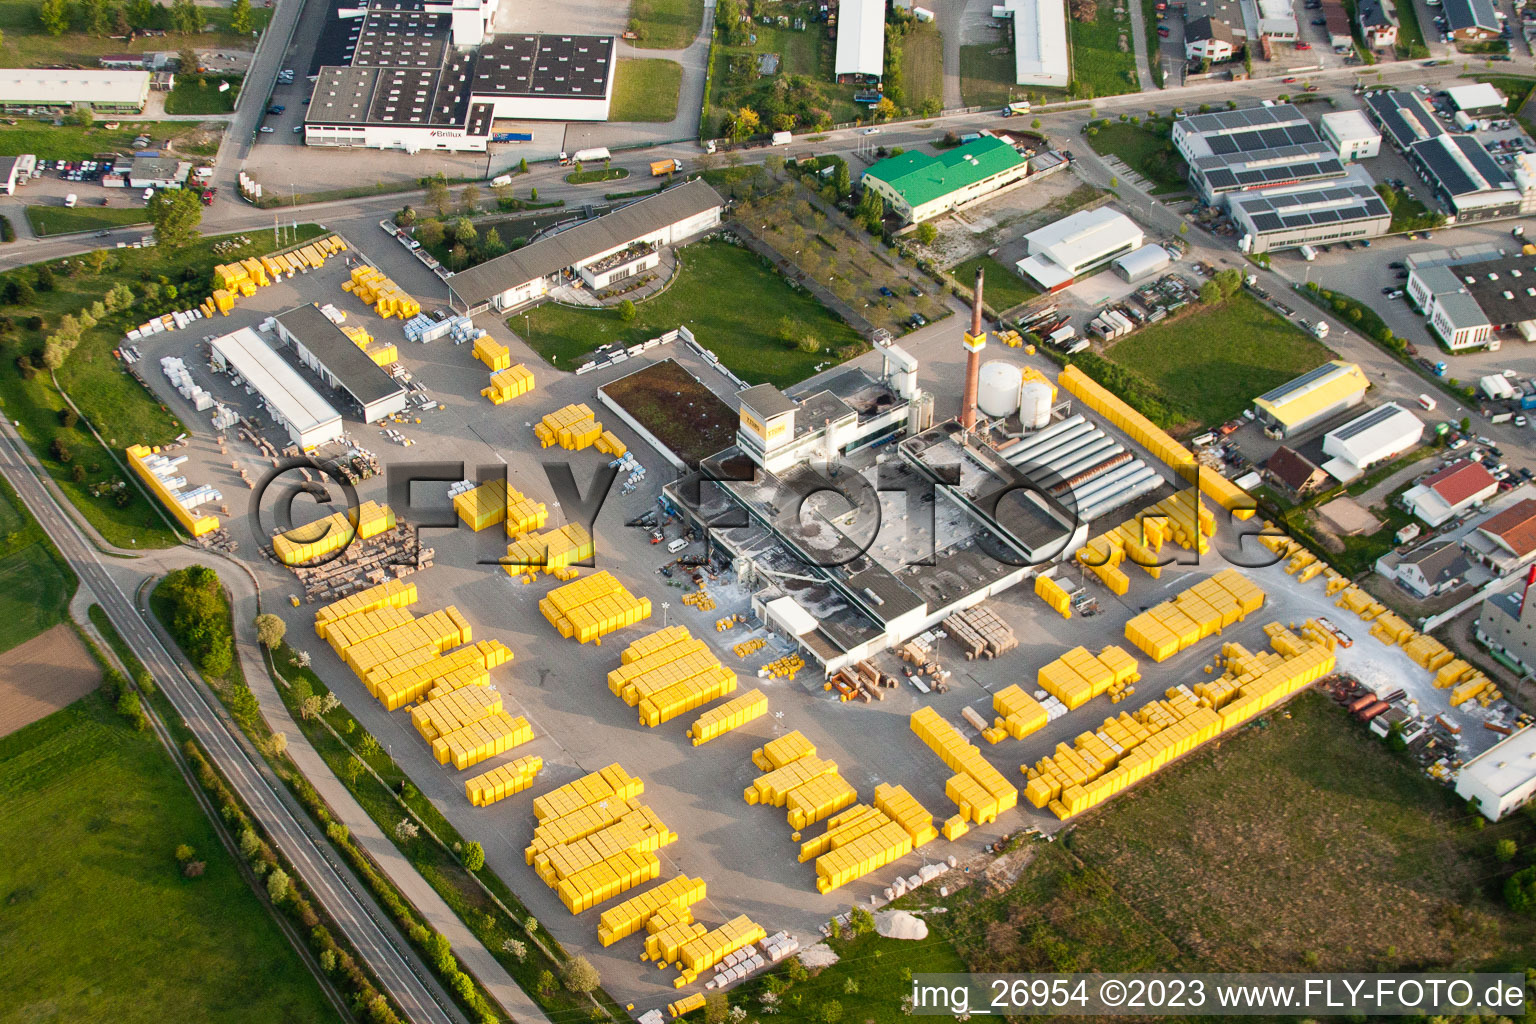 Photographie aérienne de Usine Ytong à Malsch dans le département Bade-Wurtemberg, Allemagne